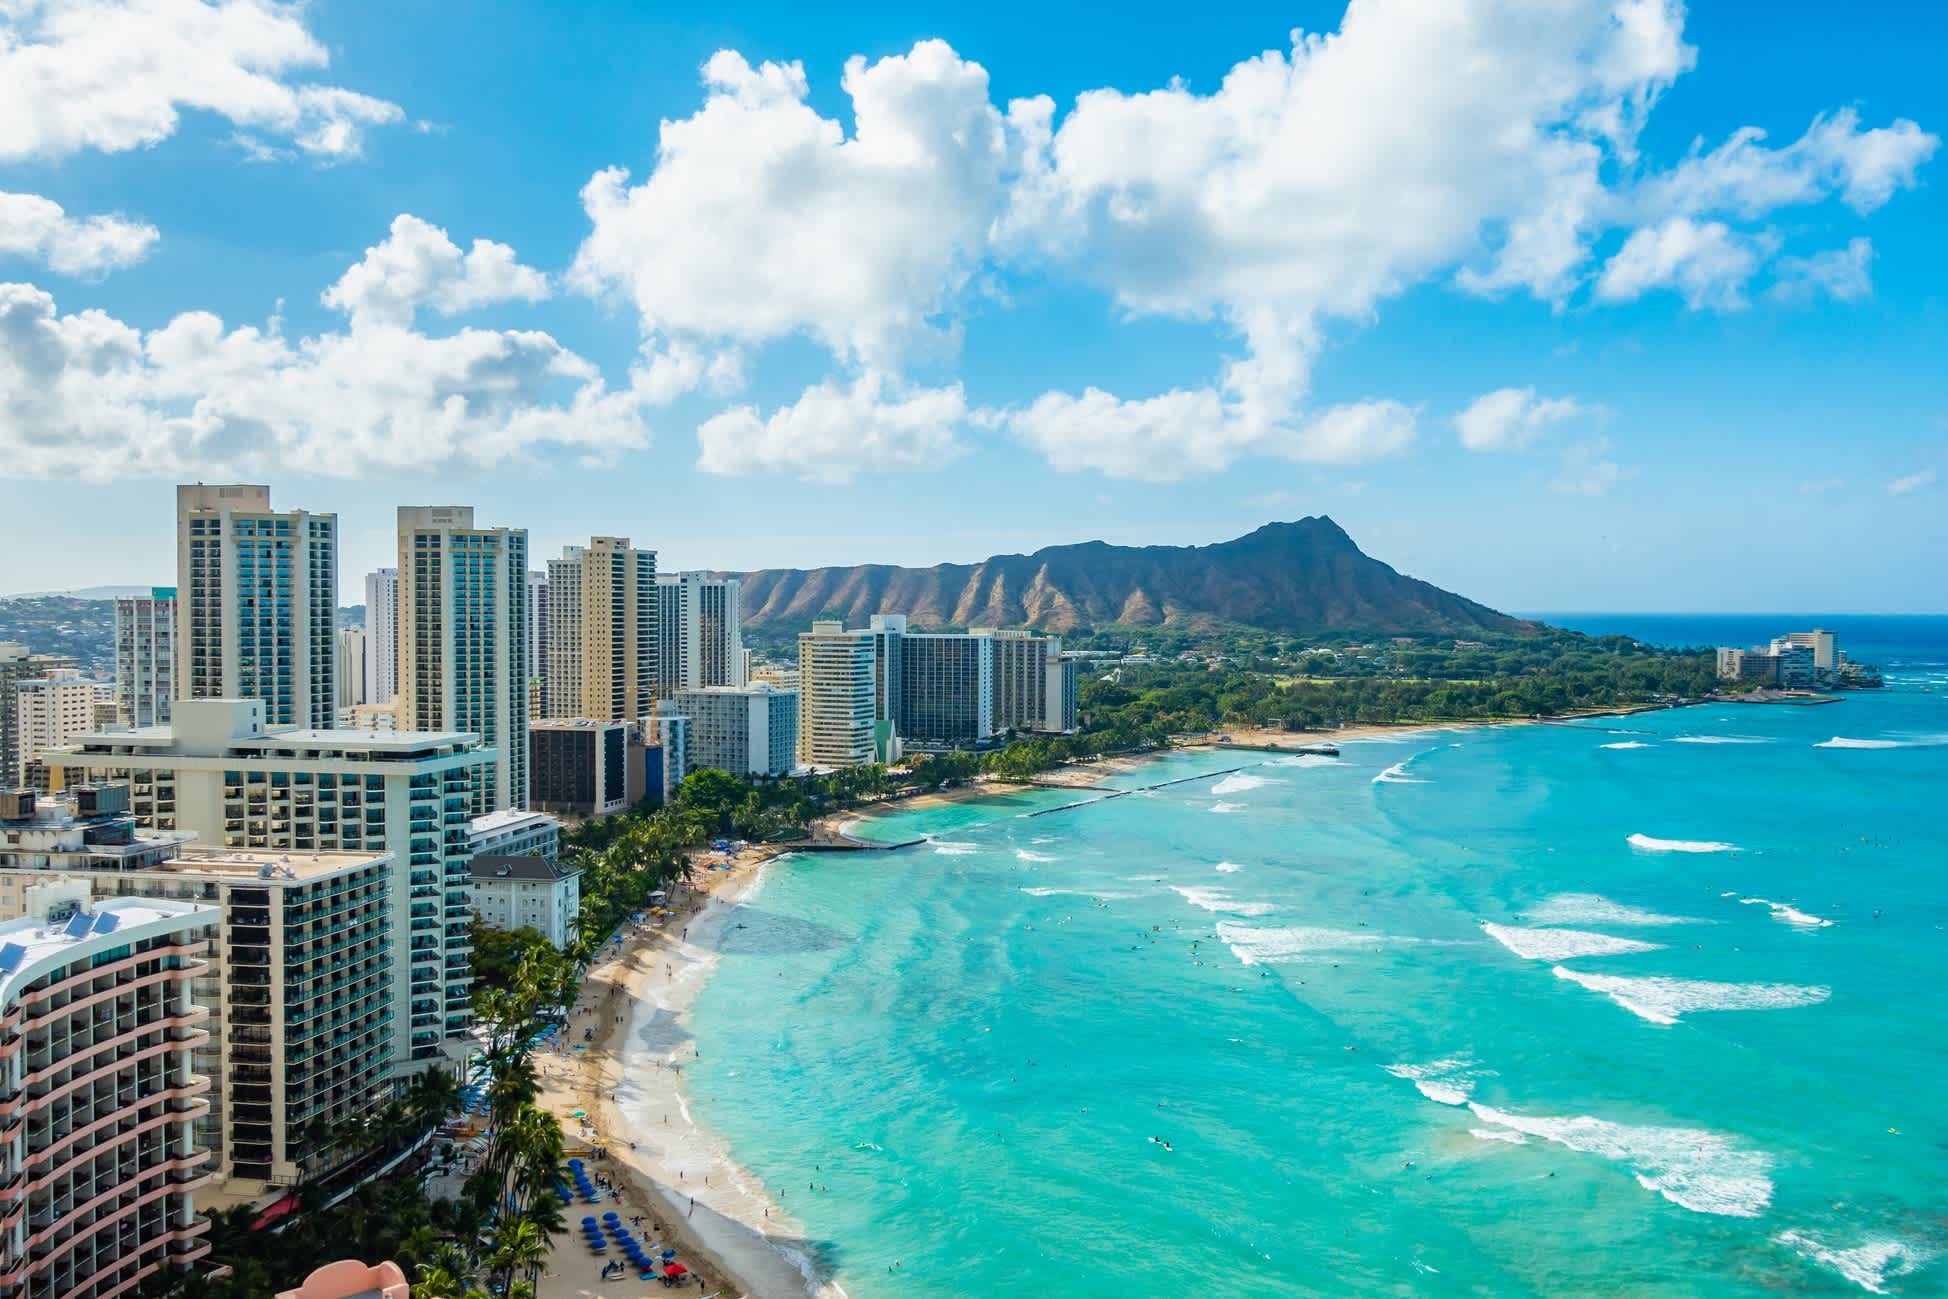 Waikiki Beach und Diamond Head Crater mit den Hotels und Gebäuden in Waikiki, Honolulu, Oahu Island, Hawaii. Waikiki Beach im Zentrum von Honolulu hat die größte Anzahl von Besuchern in Hawaii 